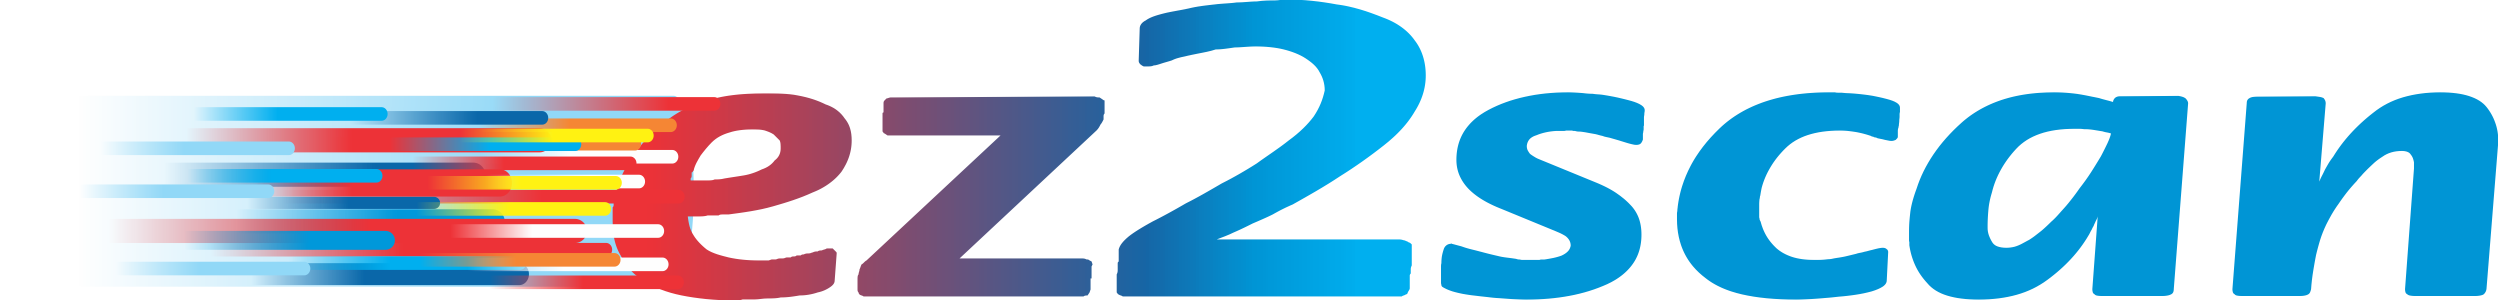 ez2scan logo hi-res